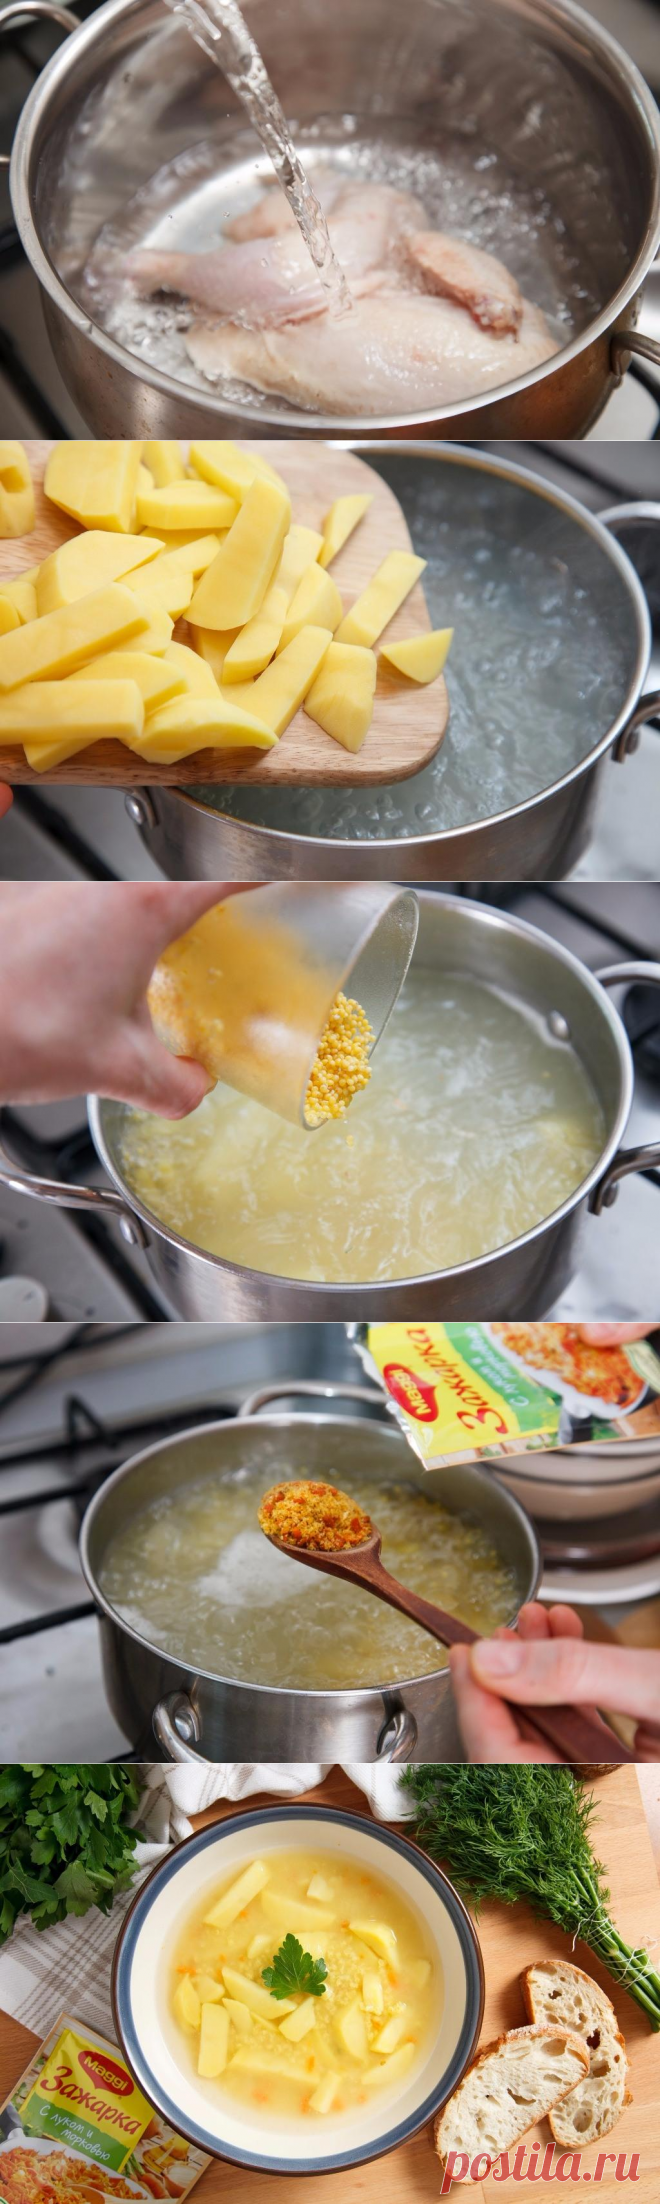 Суп с пшеном - пошаговый рецепт с фото - как приготовить - ингредиенты, состав, время приготовления - Дети Mail.Ru